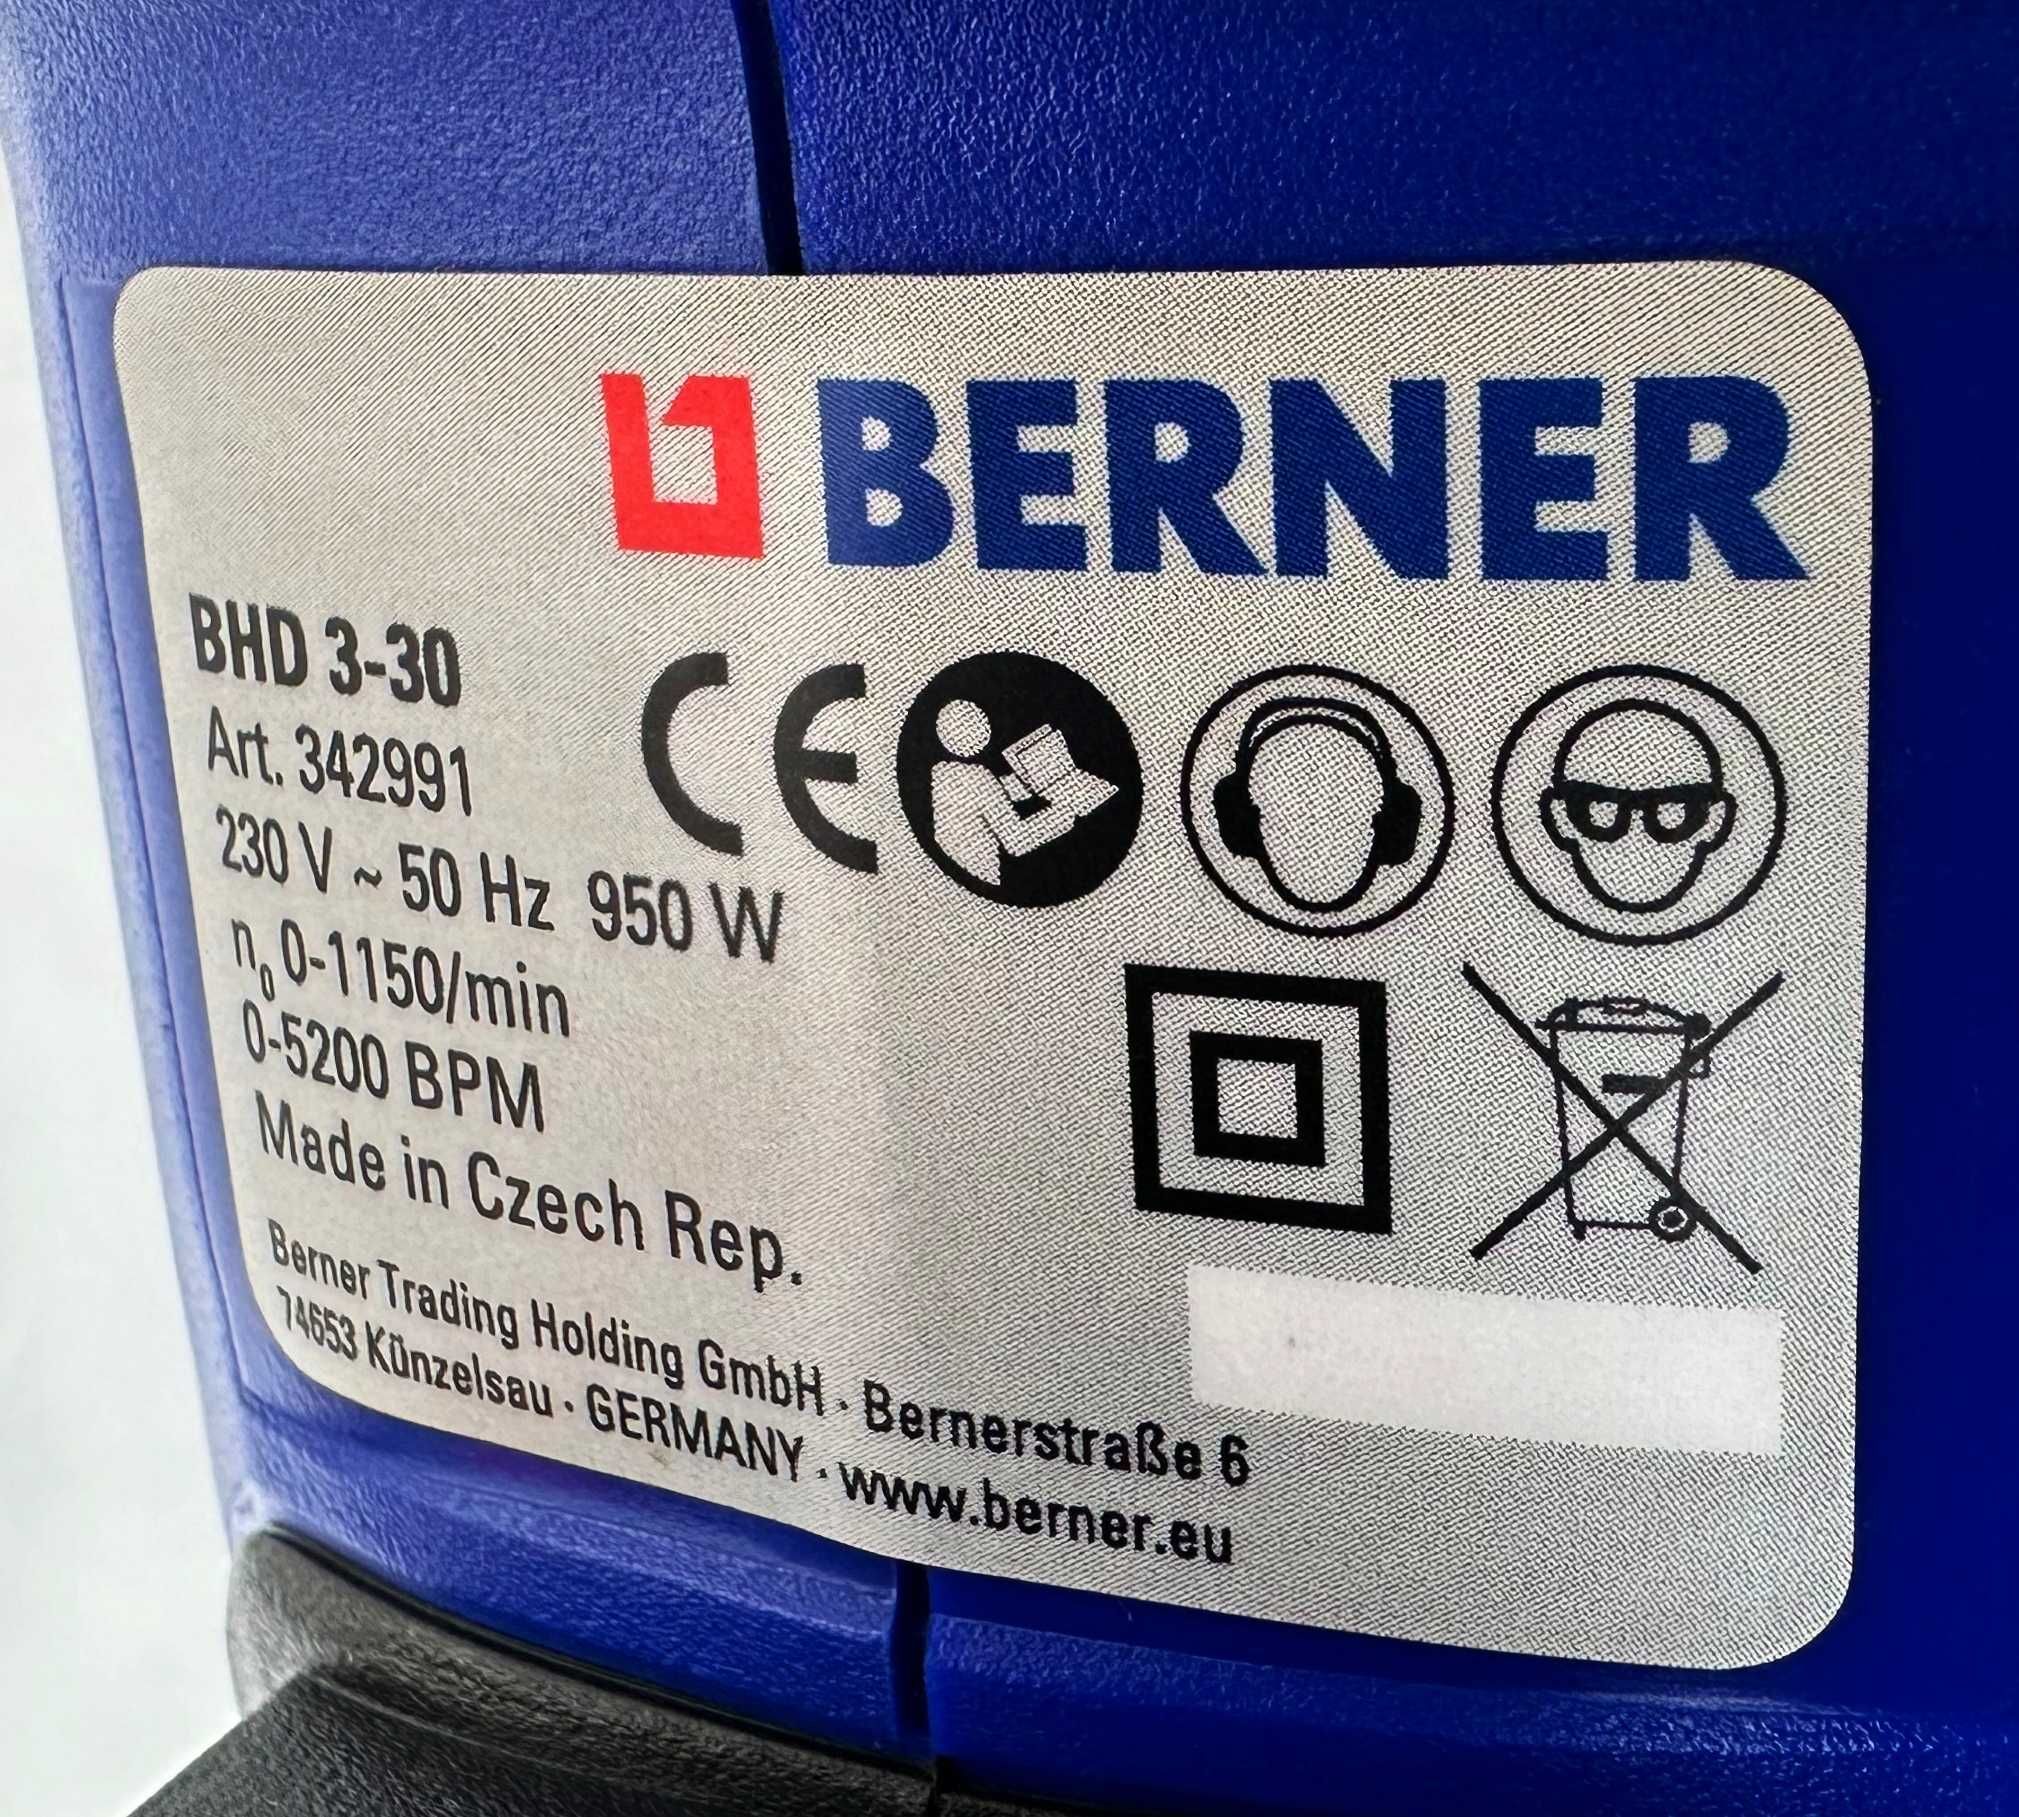 Berner BHD 3-30 - Нов комбиниран перфоратор 950W 3.5J